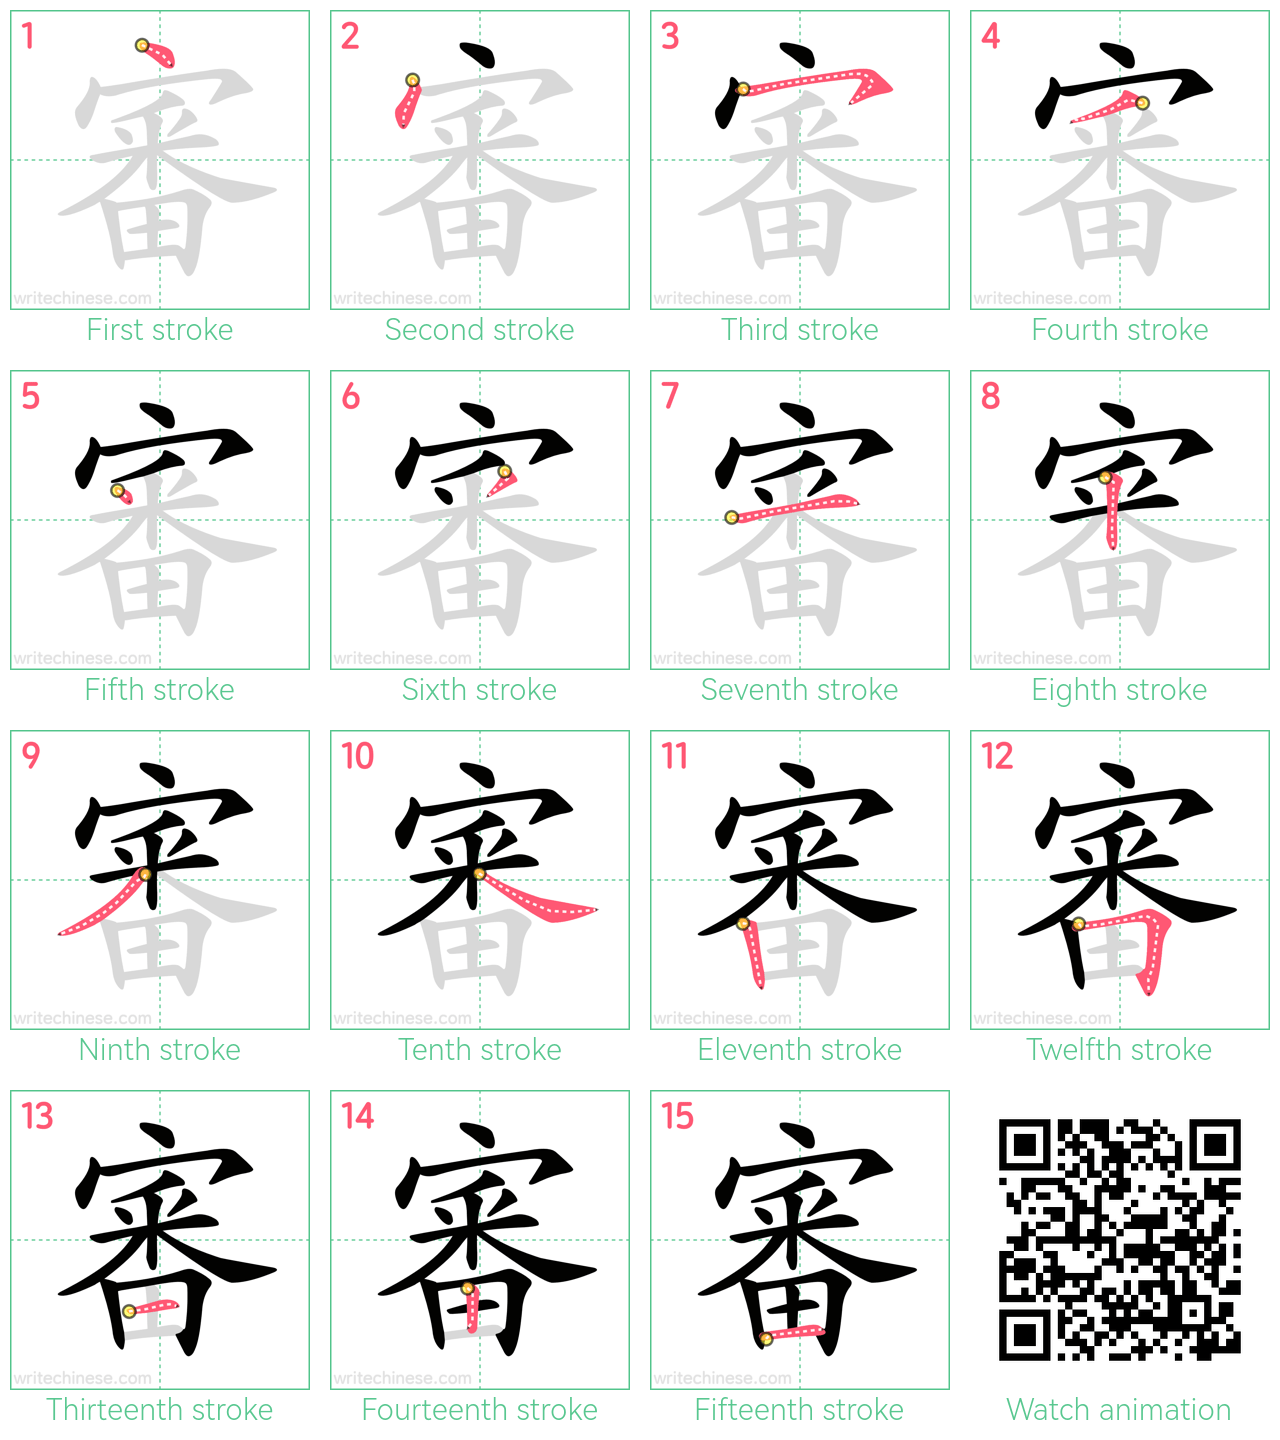 審 step-by-step stroke order diagrams